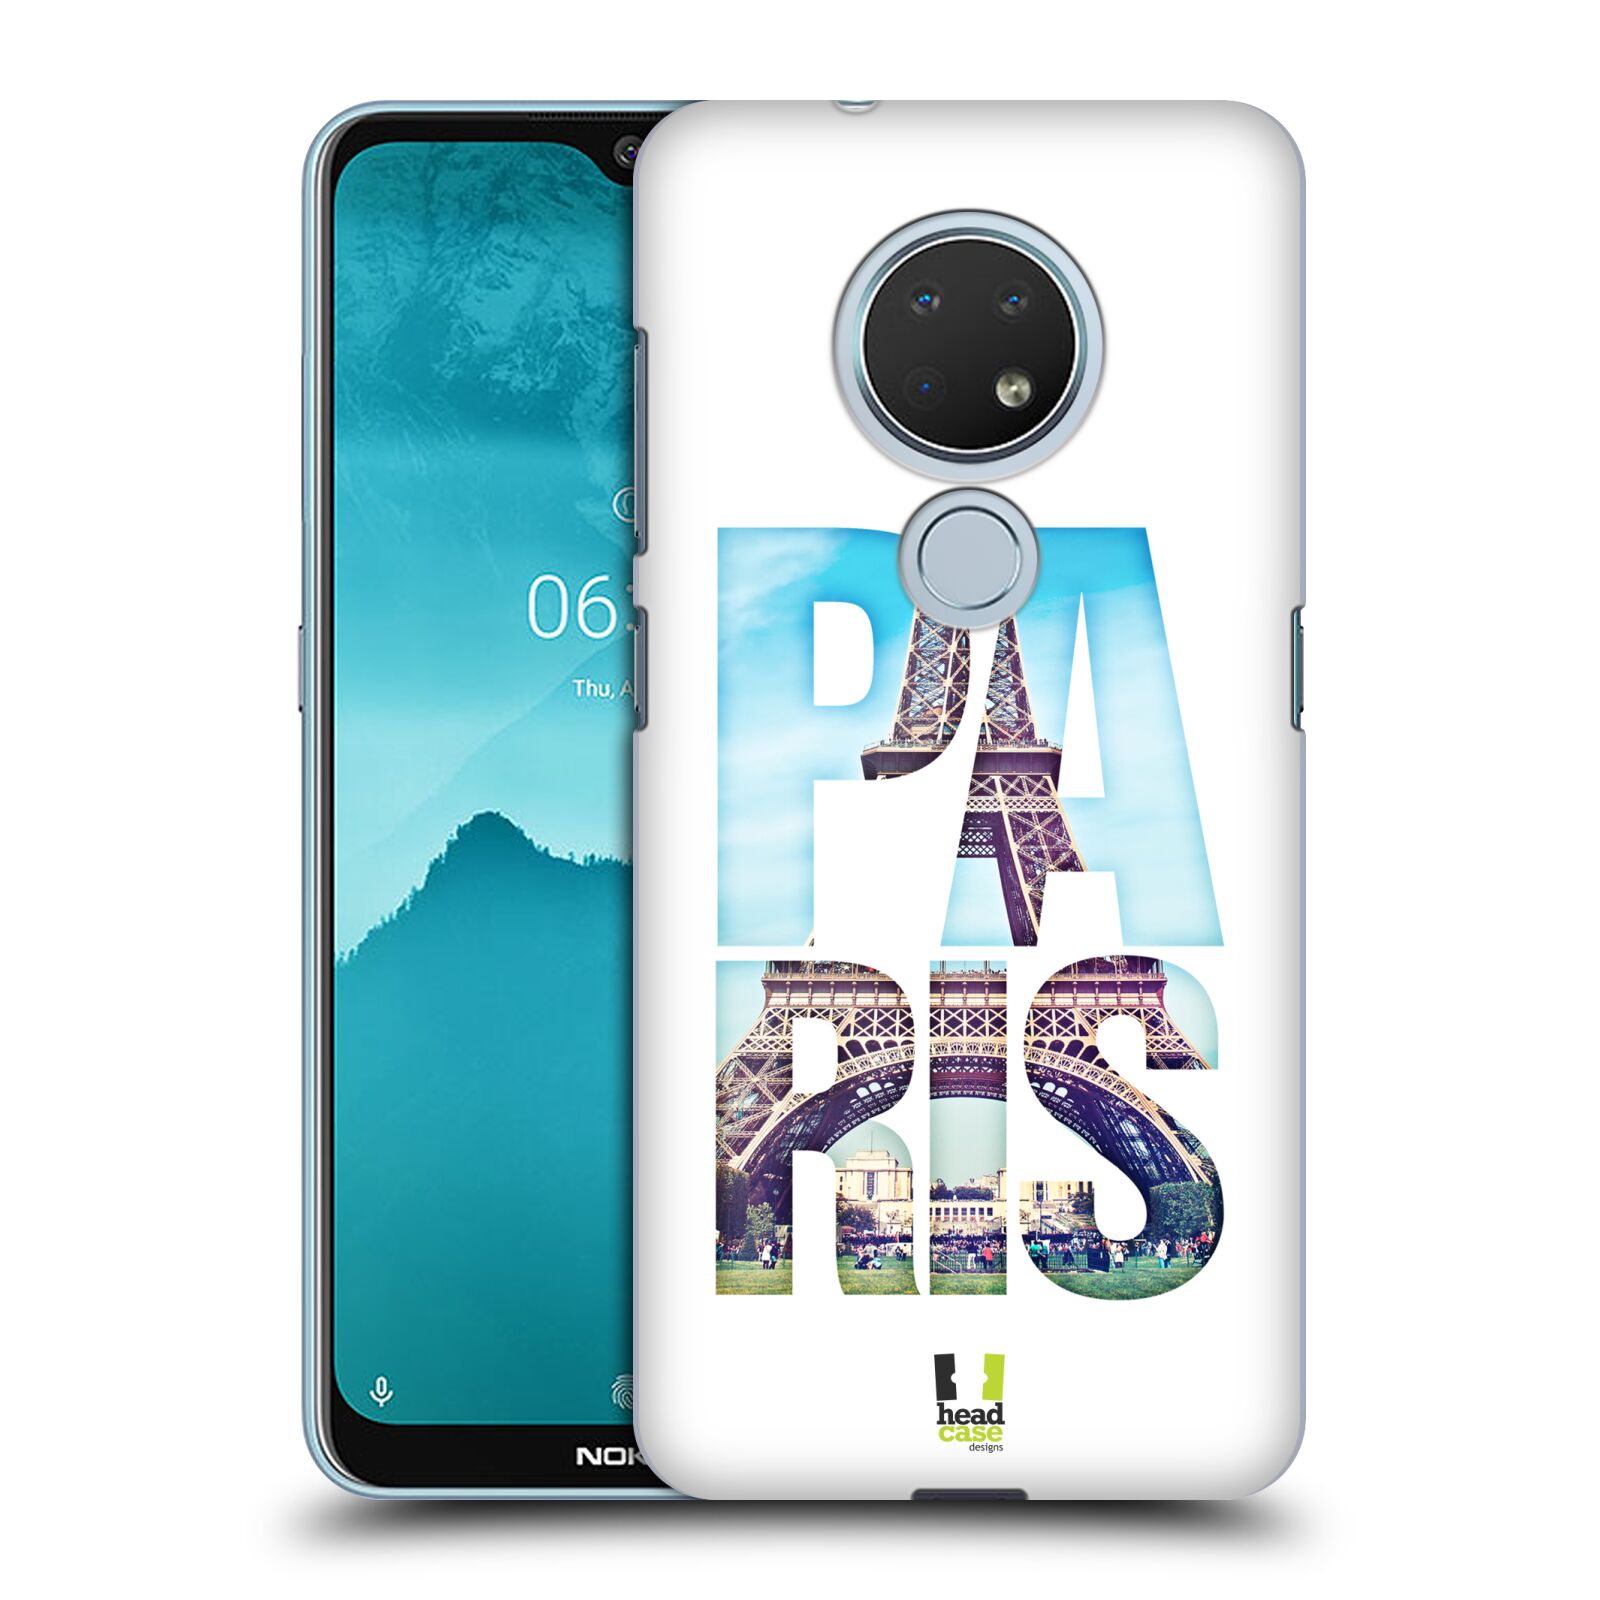 Pouzdro na mobil Nokia 6.2 - HEAD CASE - vzor Města foto a nadpis FRANCIE, PAŘÍŽ, EIFFELOVA VĚŽ